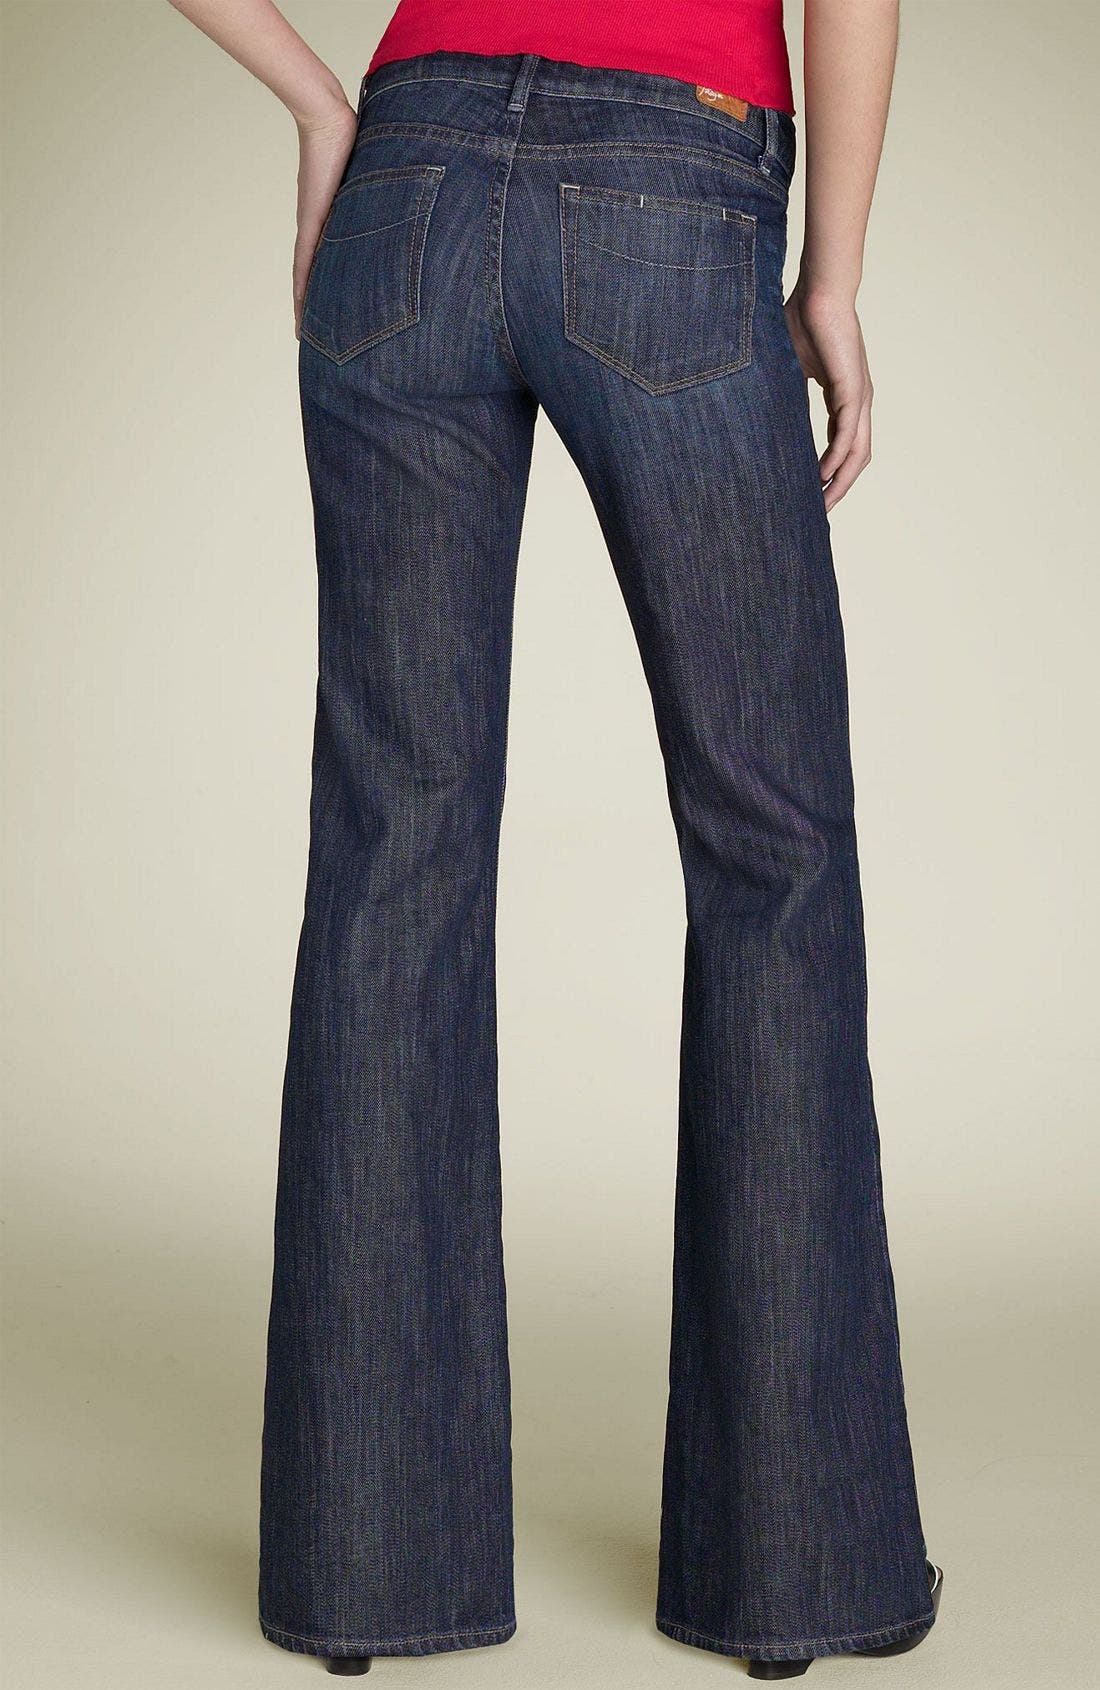 paige robertson jeans